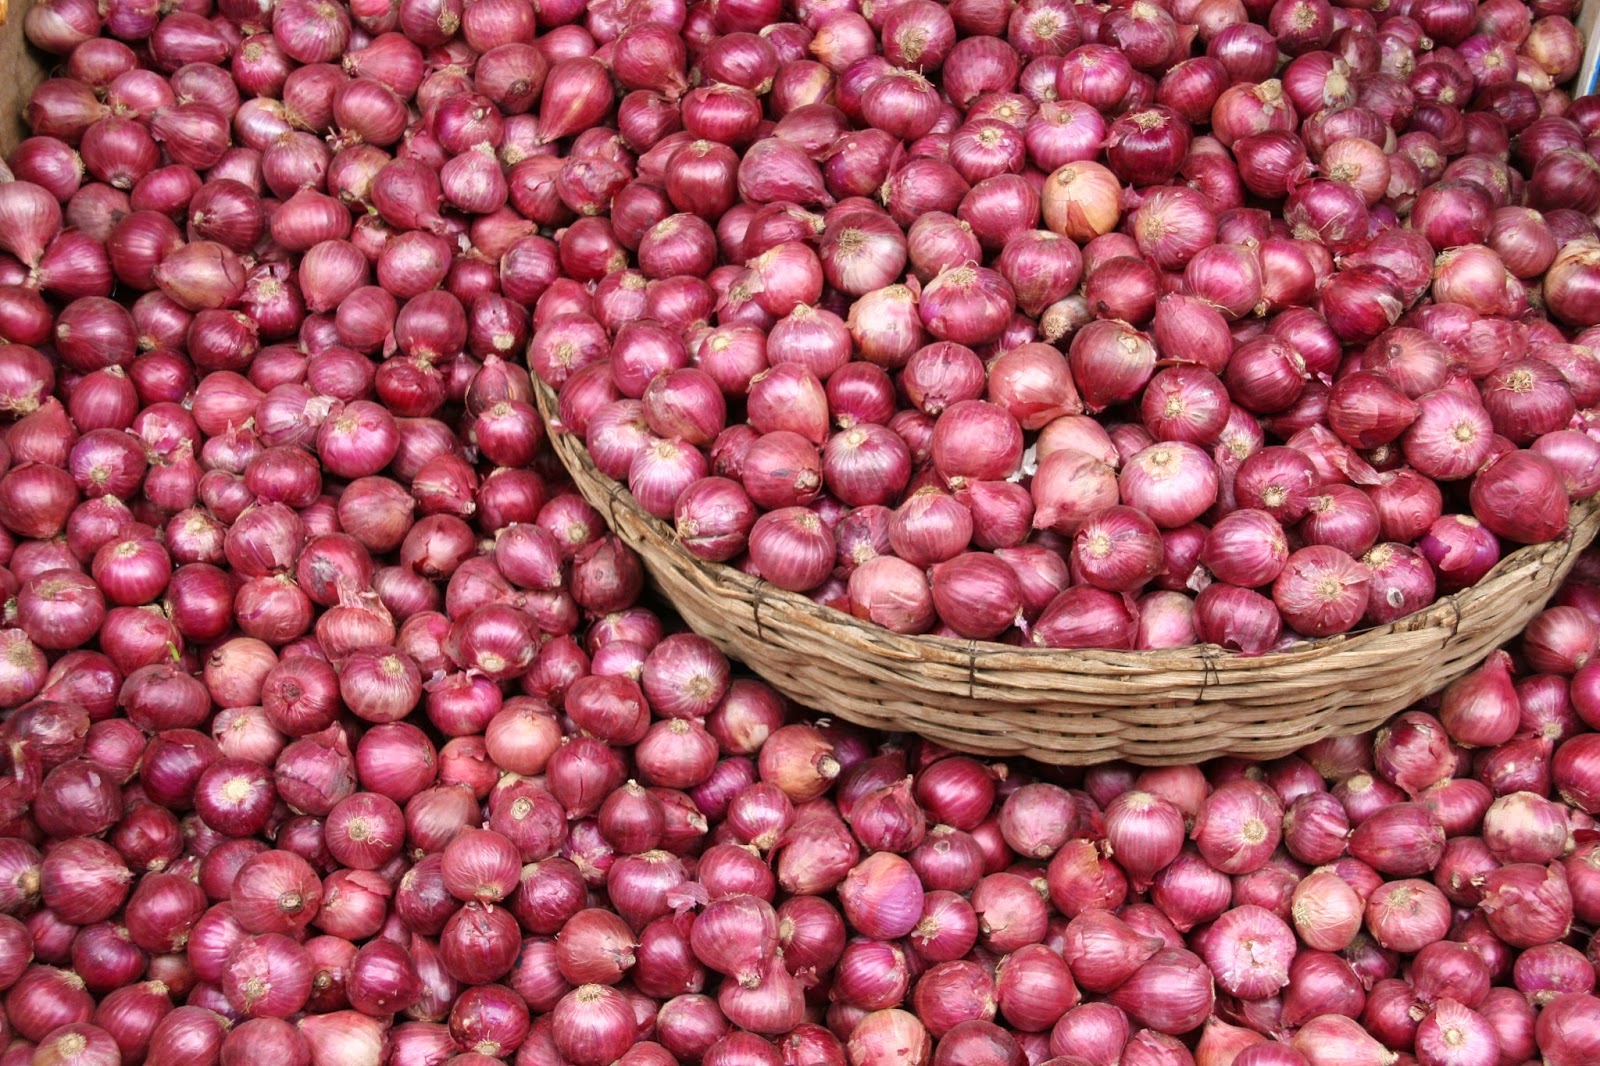 onion,1 rupees per kg,madhya pradesh,shajapur,onio